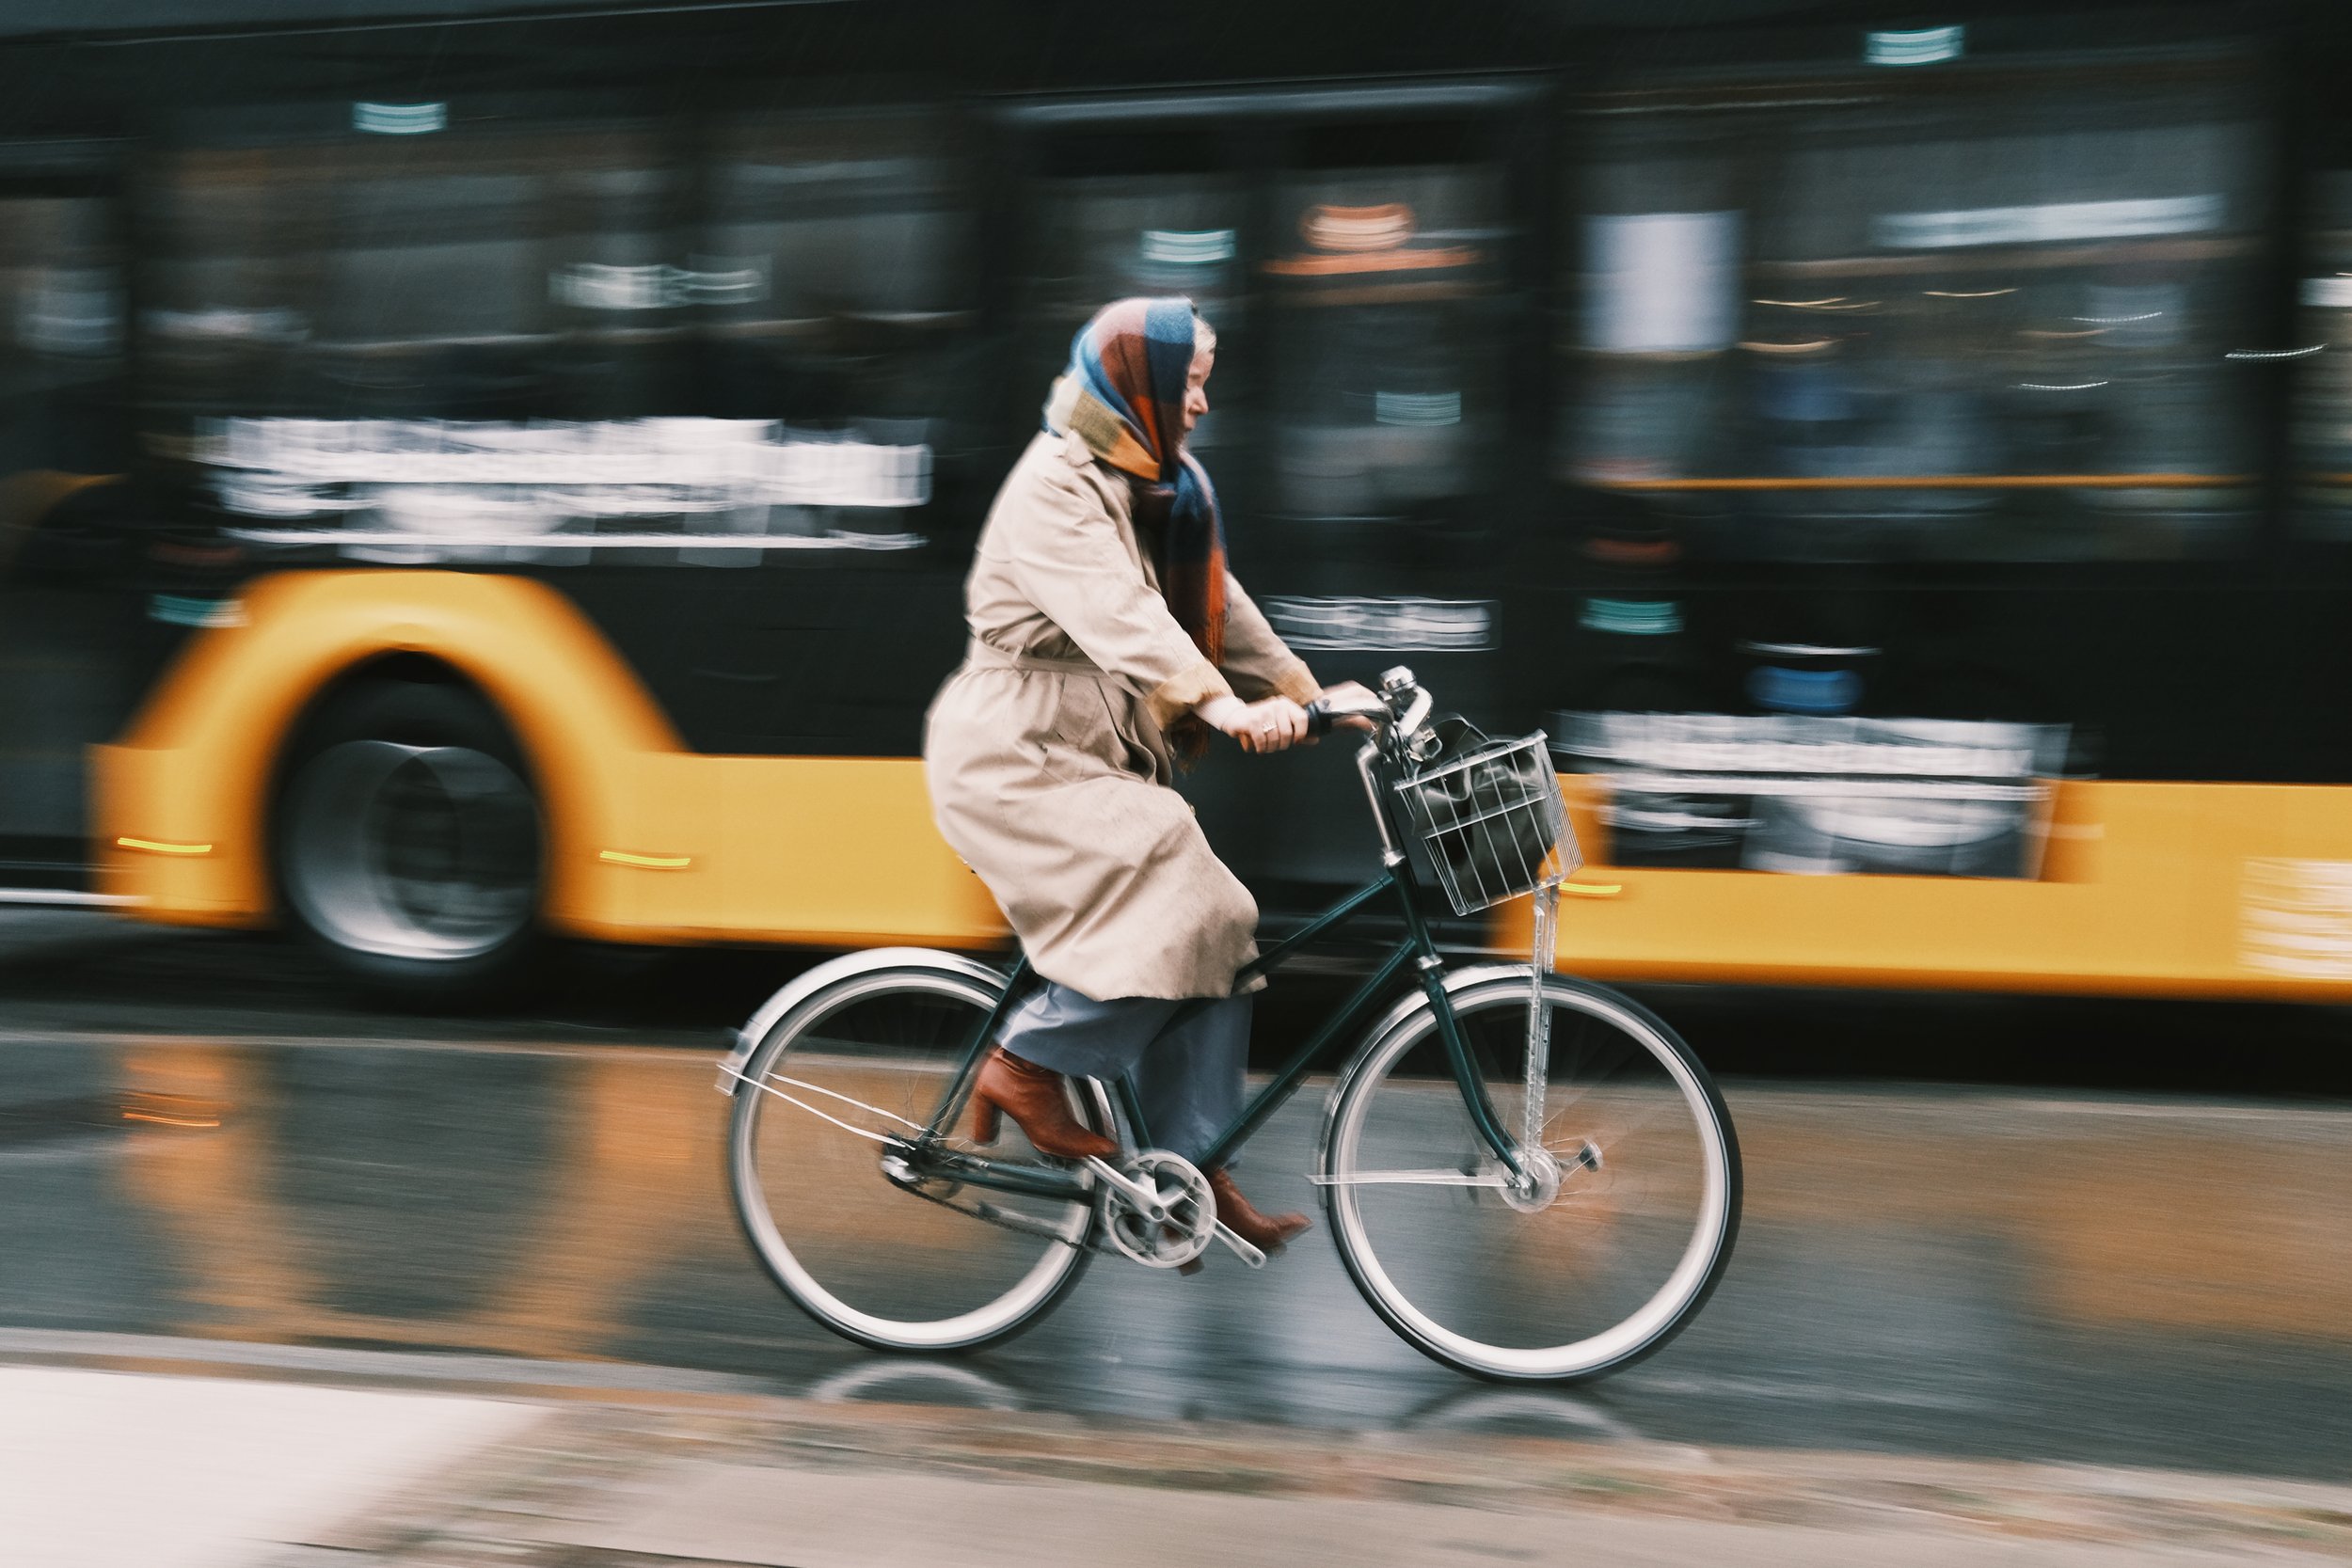 copenhagen - rainy bike ride.jpg